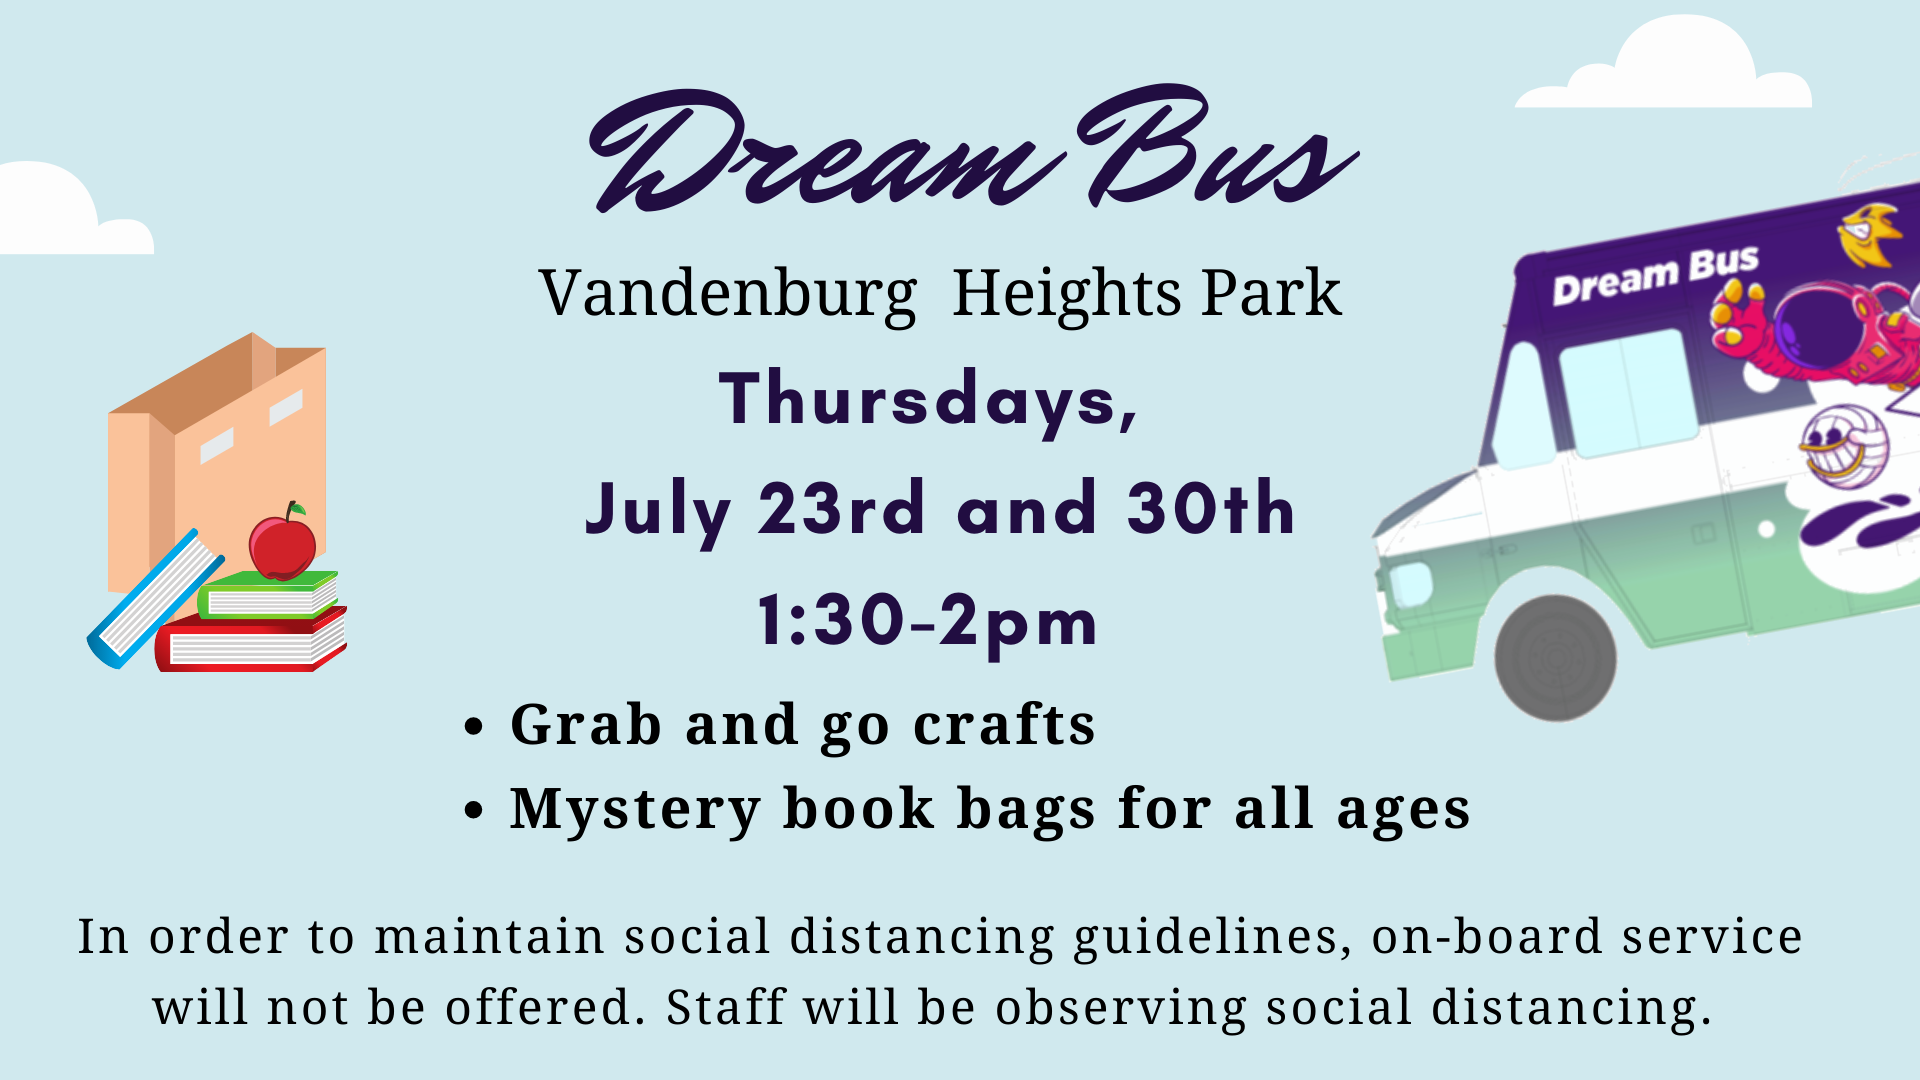 Dream Bus at Vandenburg Heights Park